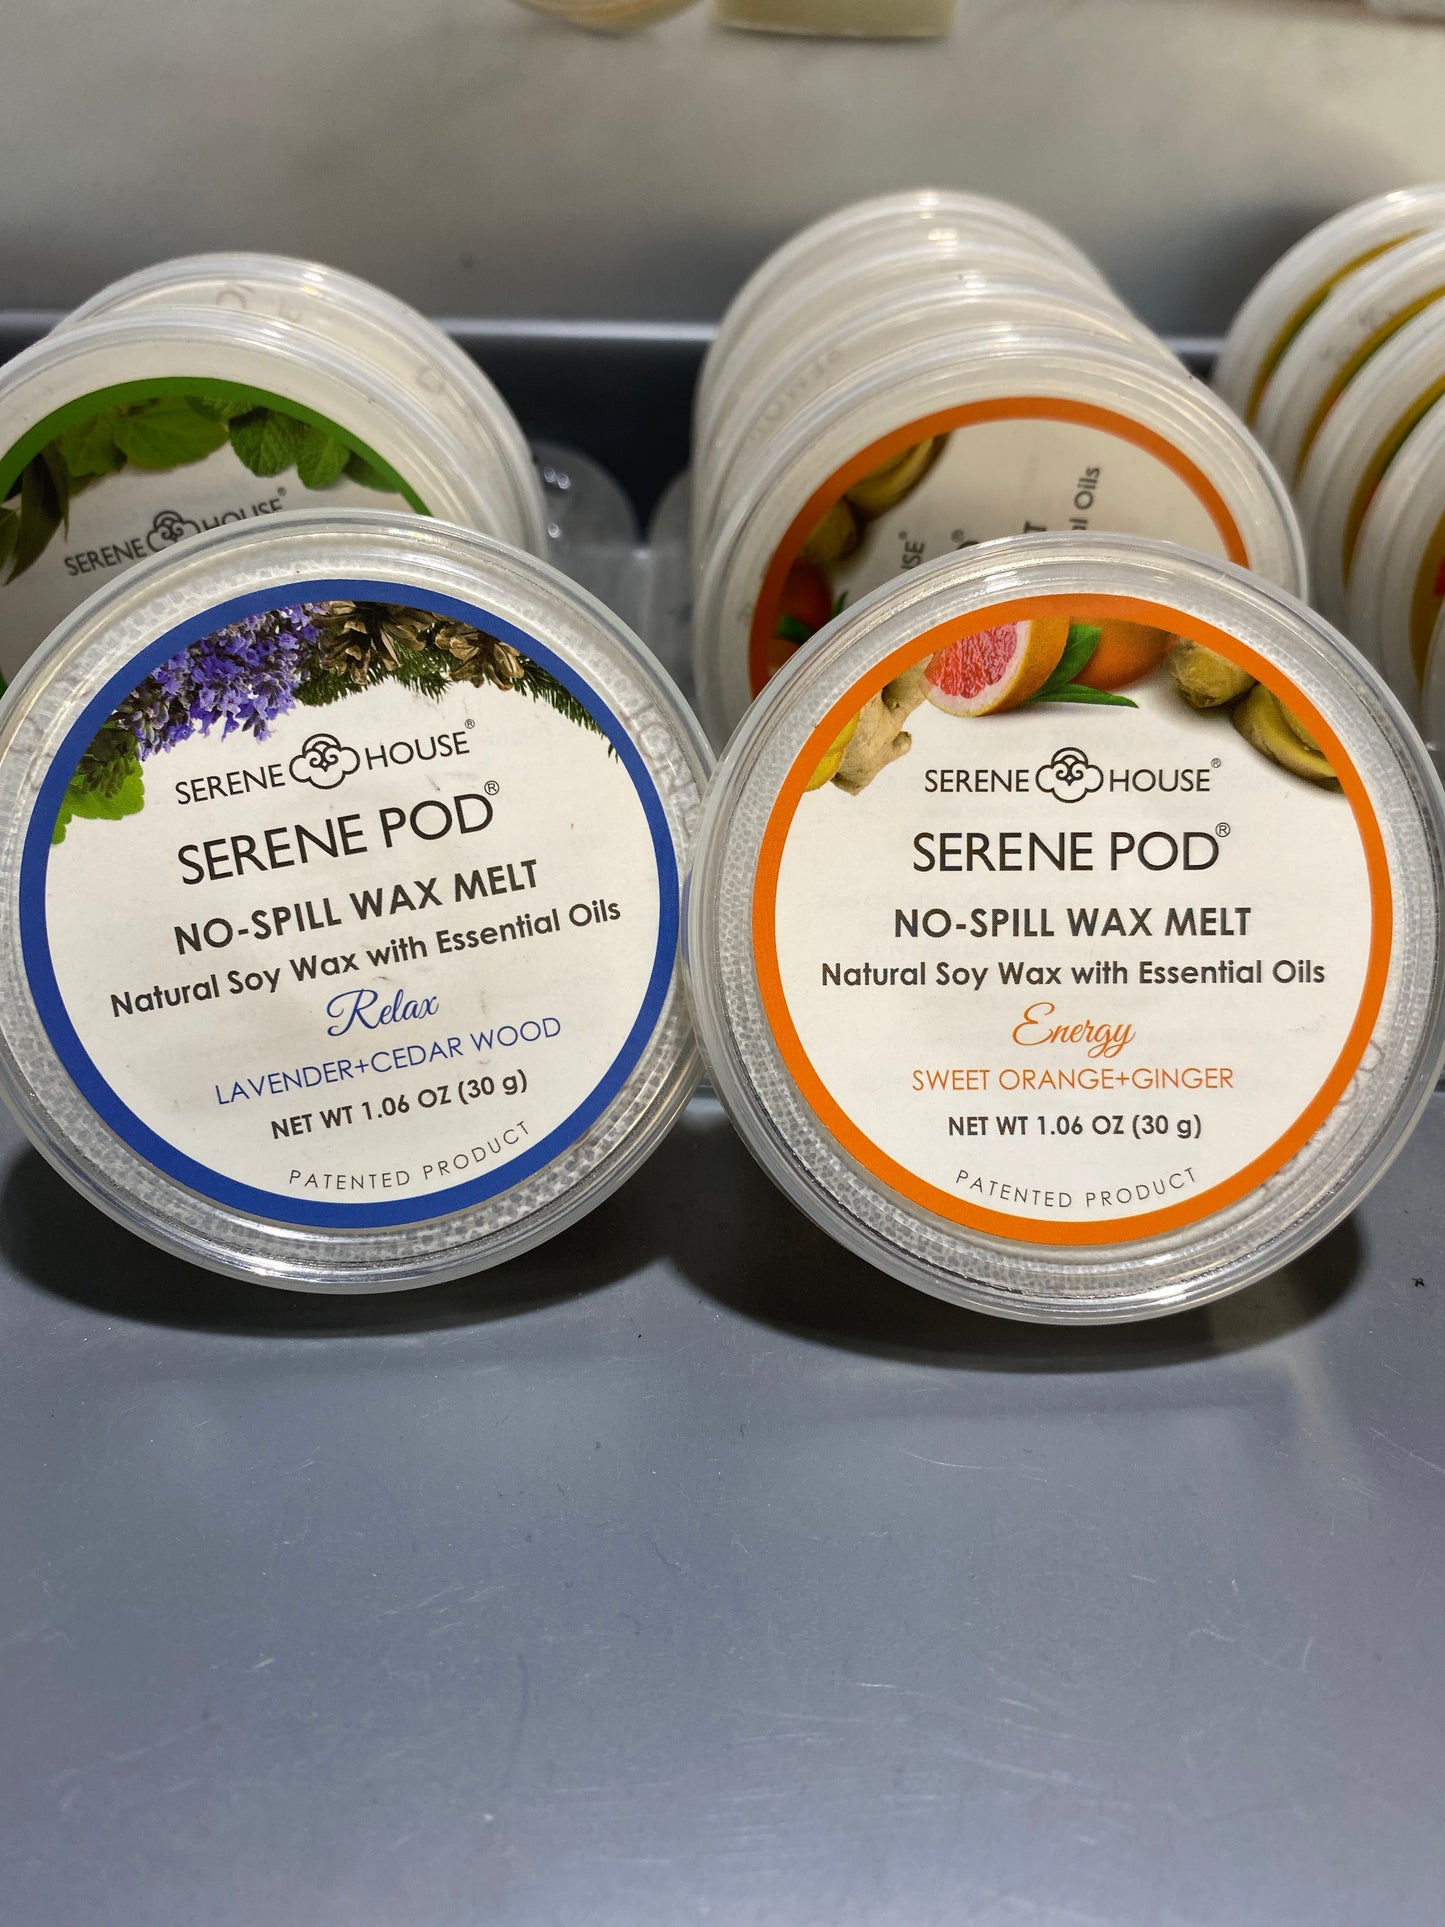 Serene Pod No-Spill Wax Melts